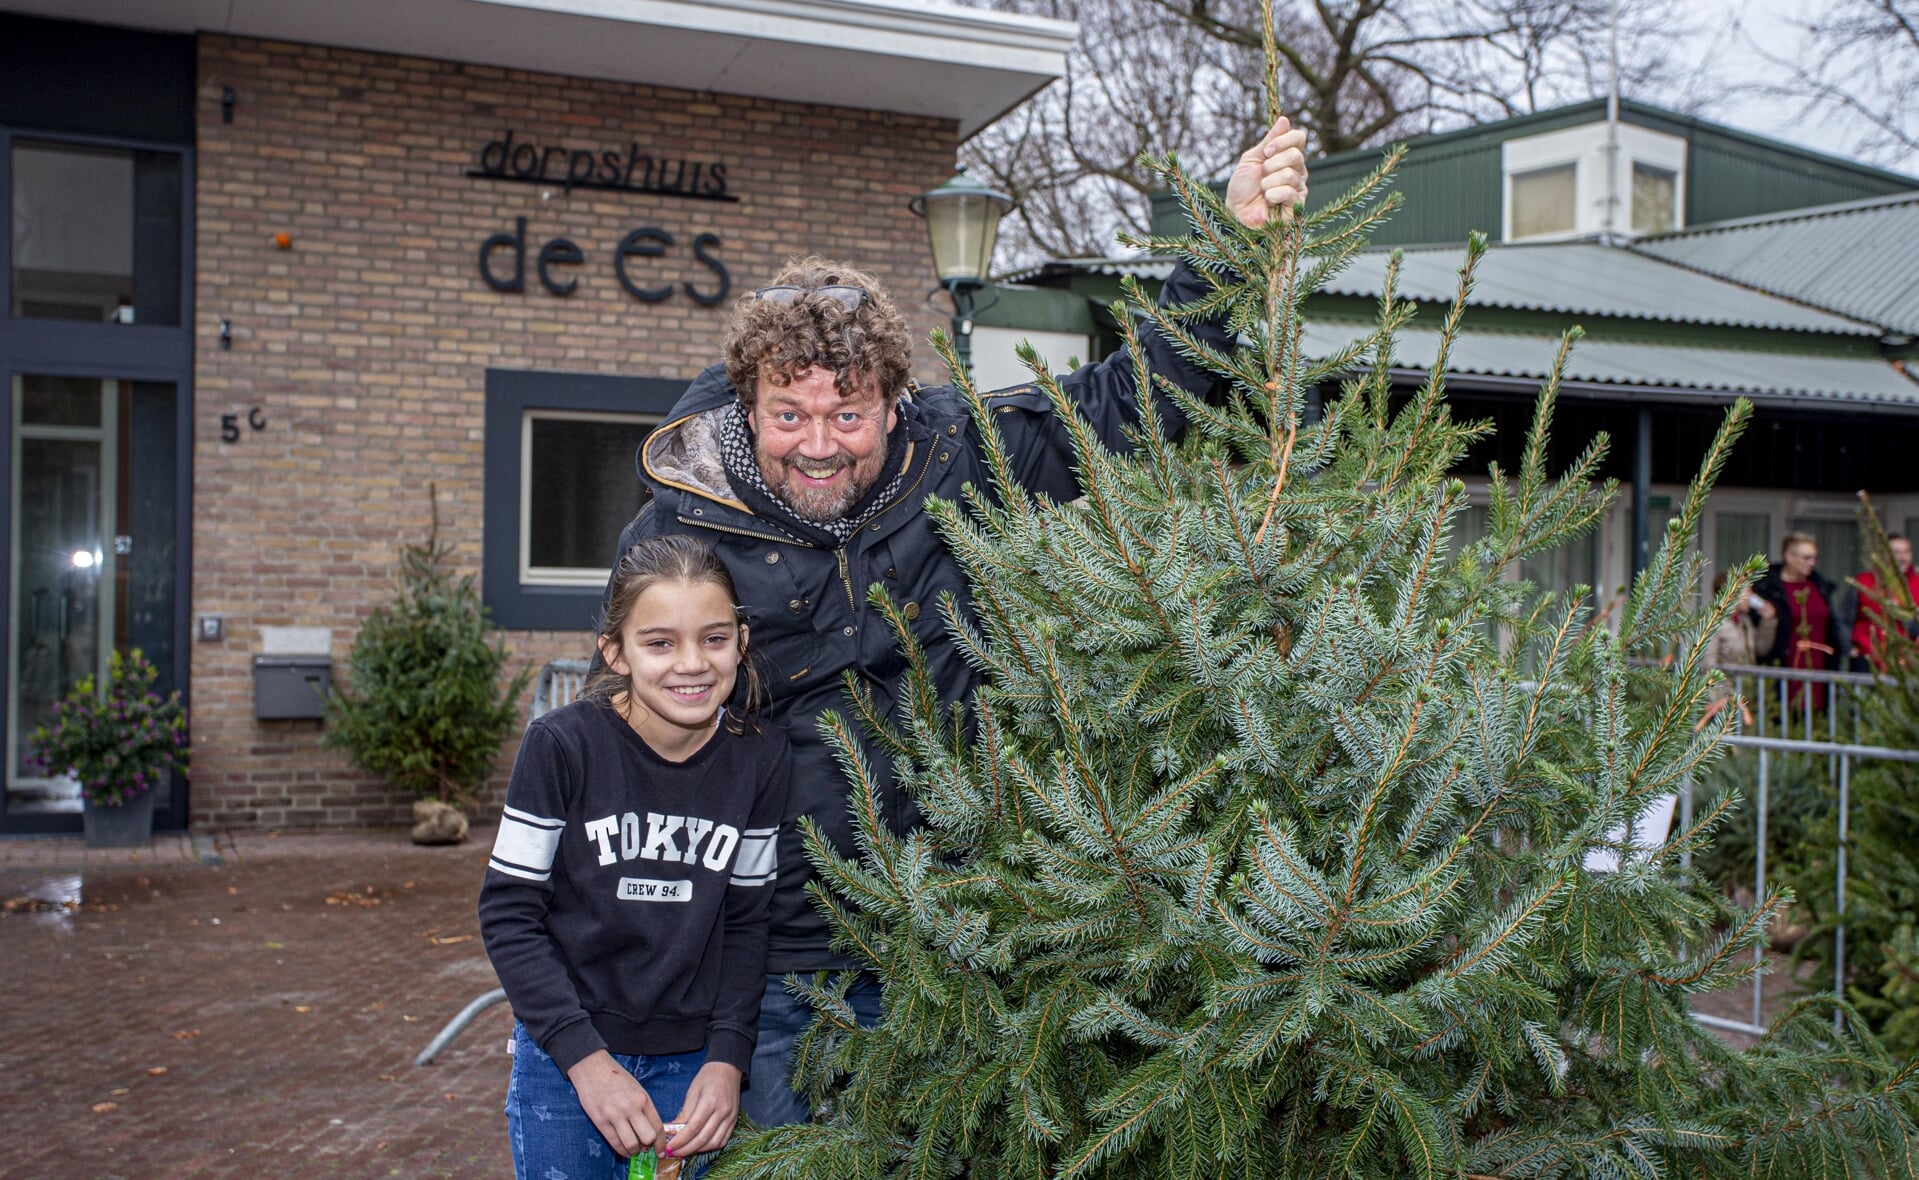 Twee jaar geleden scoorden Harold de Bie en zijn dochter Katie een kerstboom bij de fanfare. Deze keer is de verkoop niet bij dorpshuis De Es zoals hierboven, maar aan de Postelstraat 21.